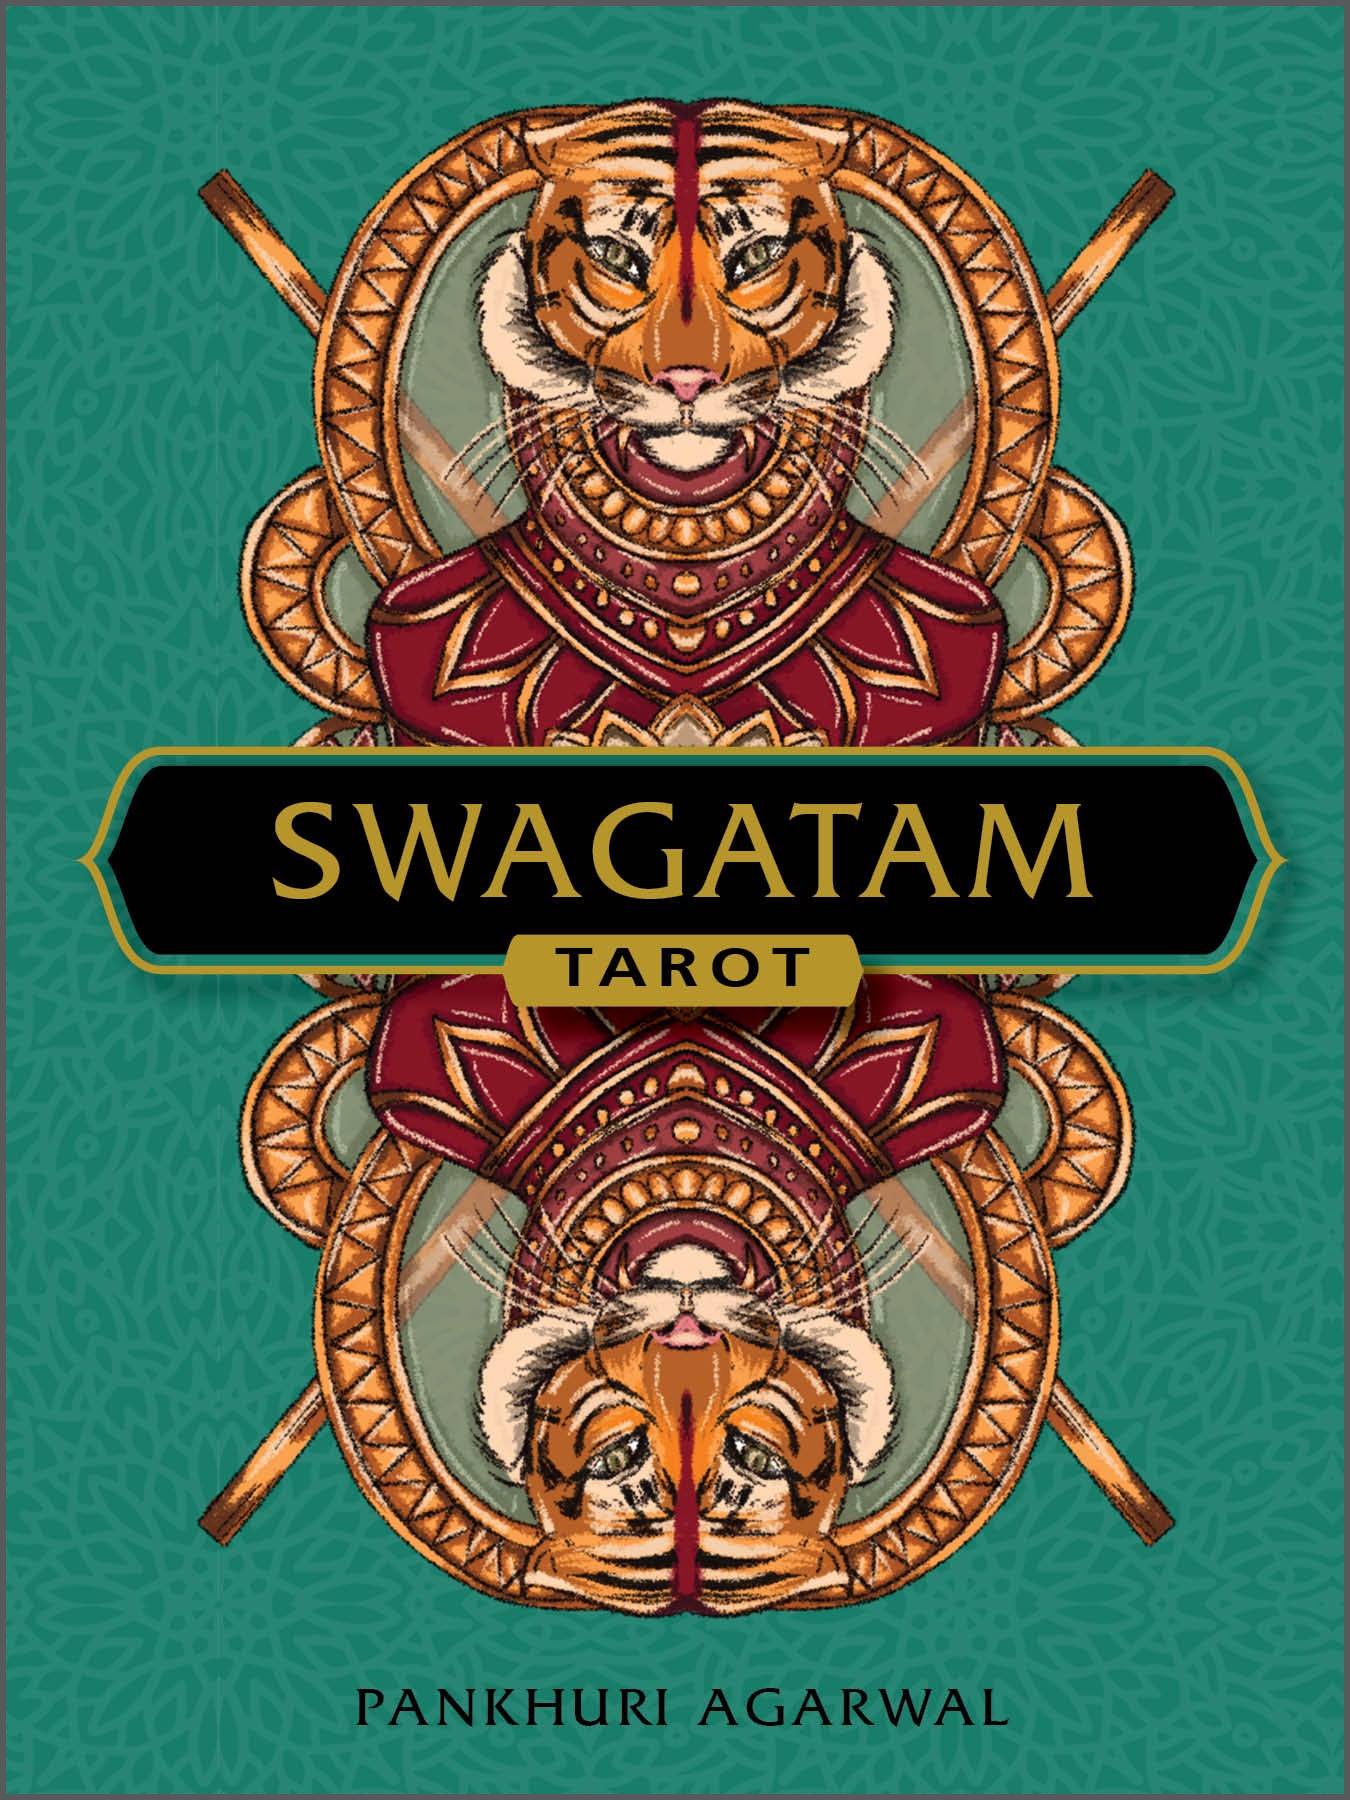 The Swagatam Tarot story